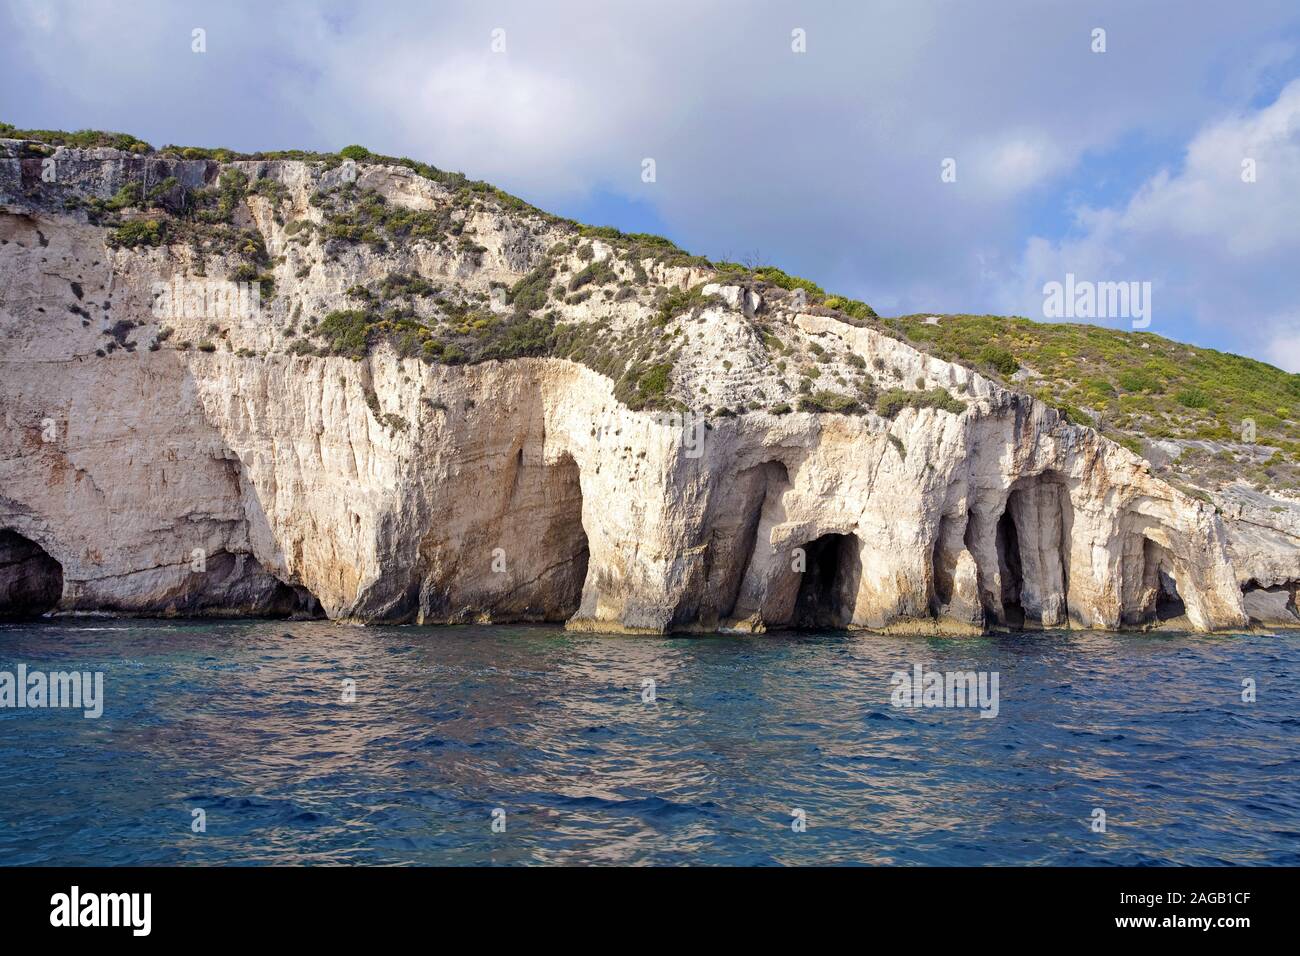 Grottes bleues à Kap Skinari, destination d'excursion populaire sur l'île de Zakynthos, Grèce Banque D'Images